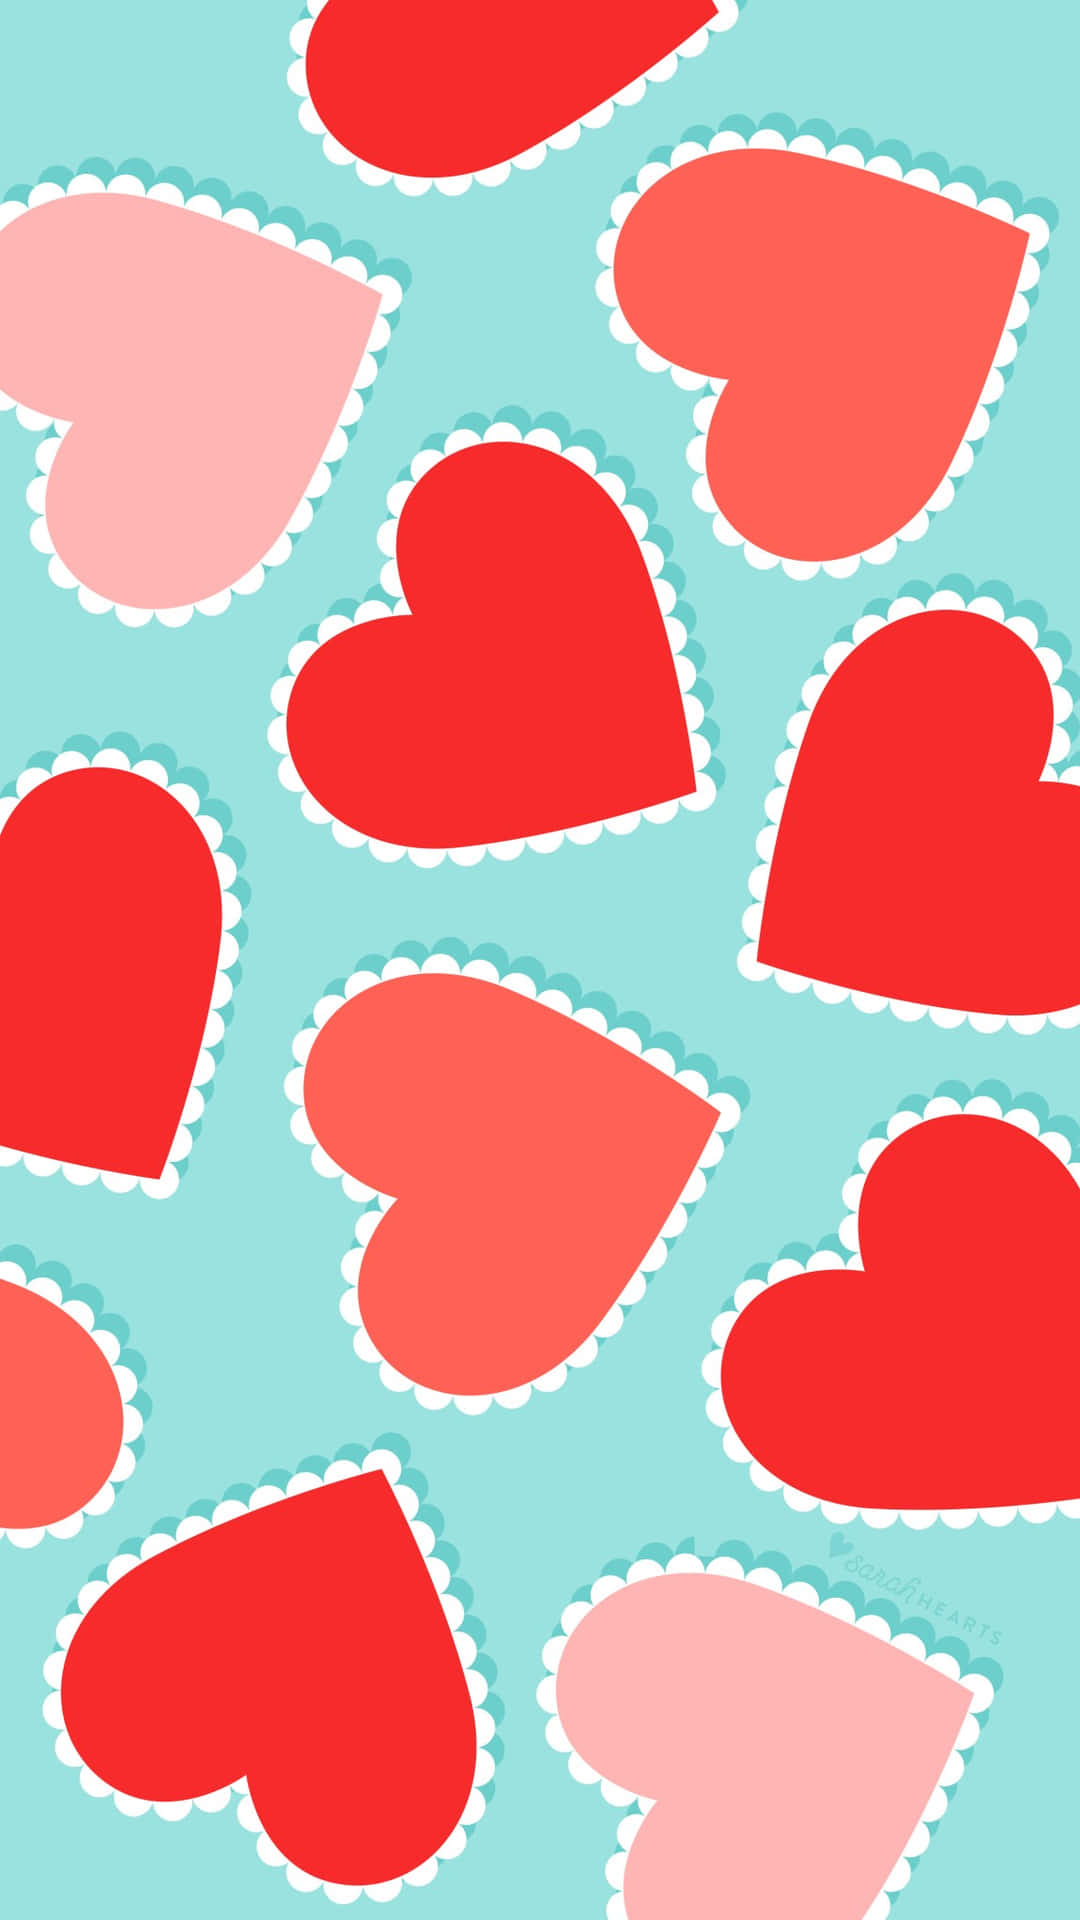 Aesthetic Valentine's Day Digital Artwork Heart Shape Wallpaper